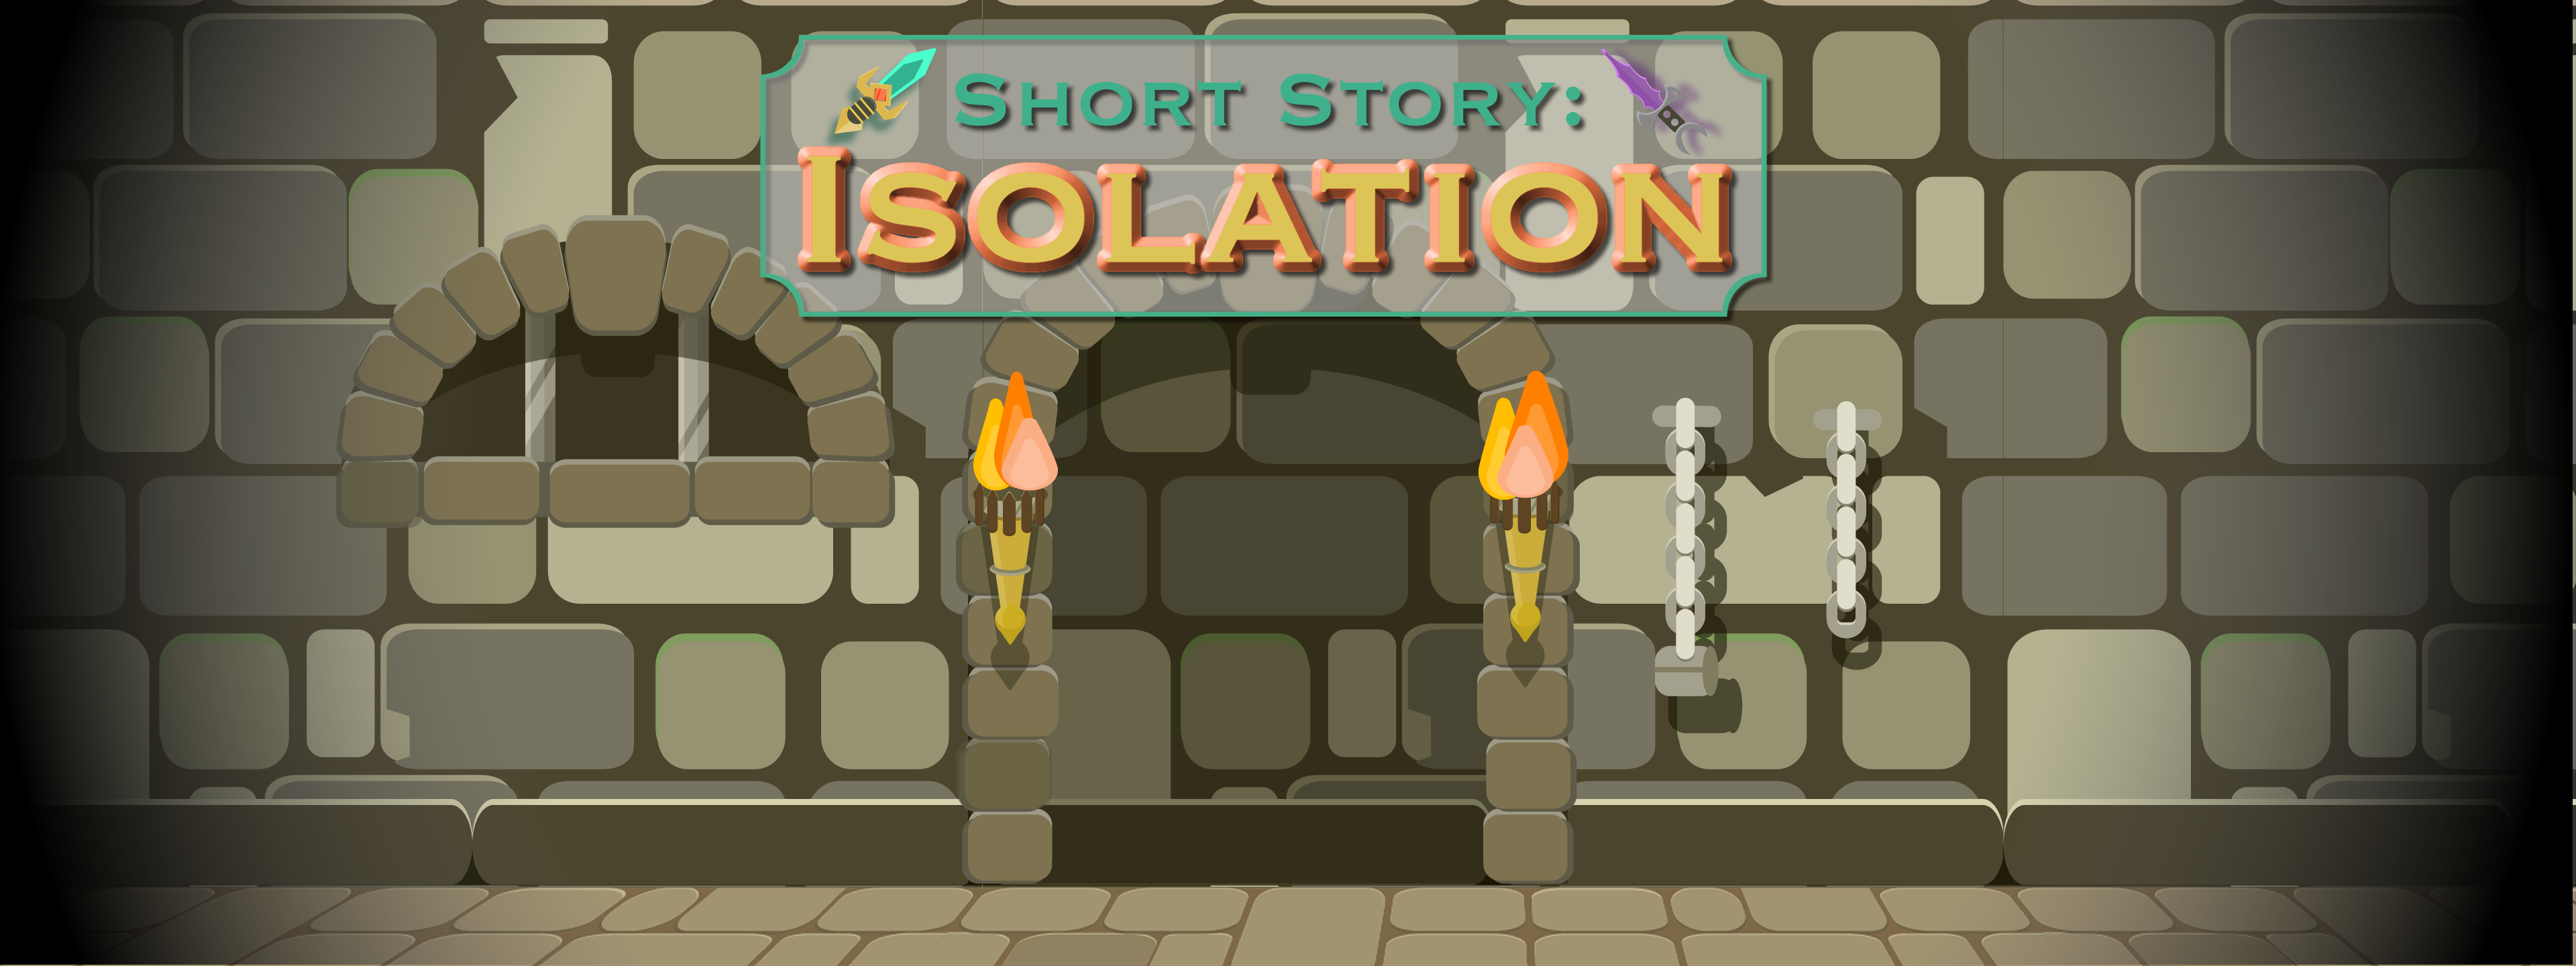 Short Story: Isolation